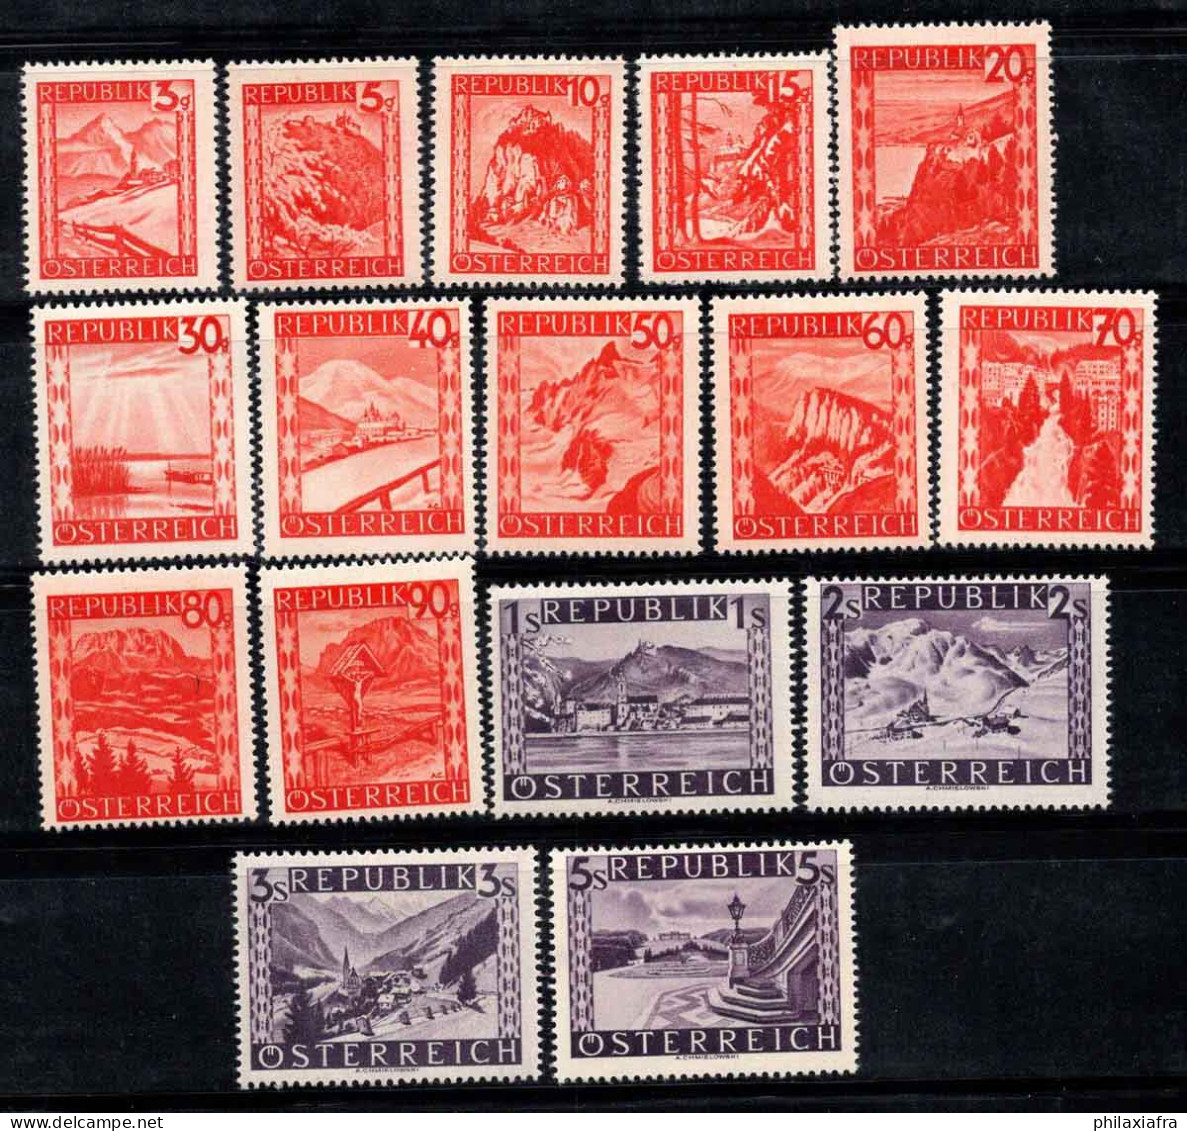 Autriche 1947 Mi. 838-853 Neuf * MH 100% Paysages - Neufs